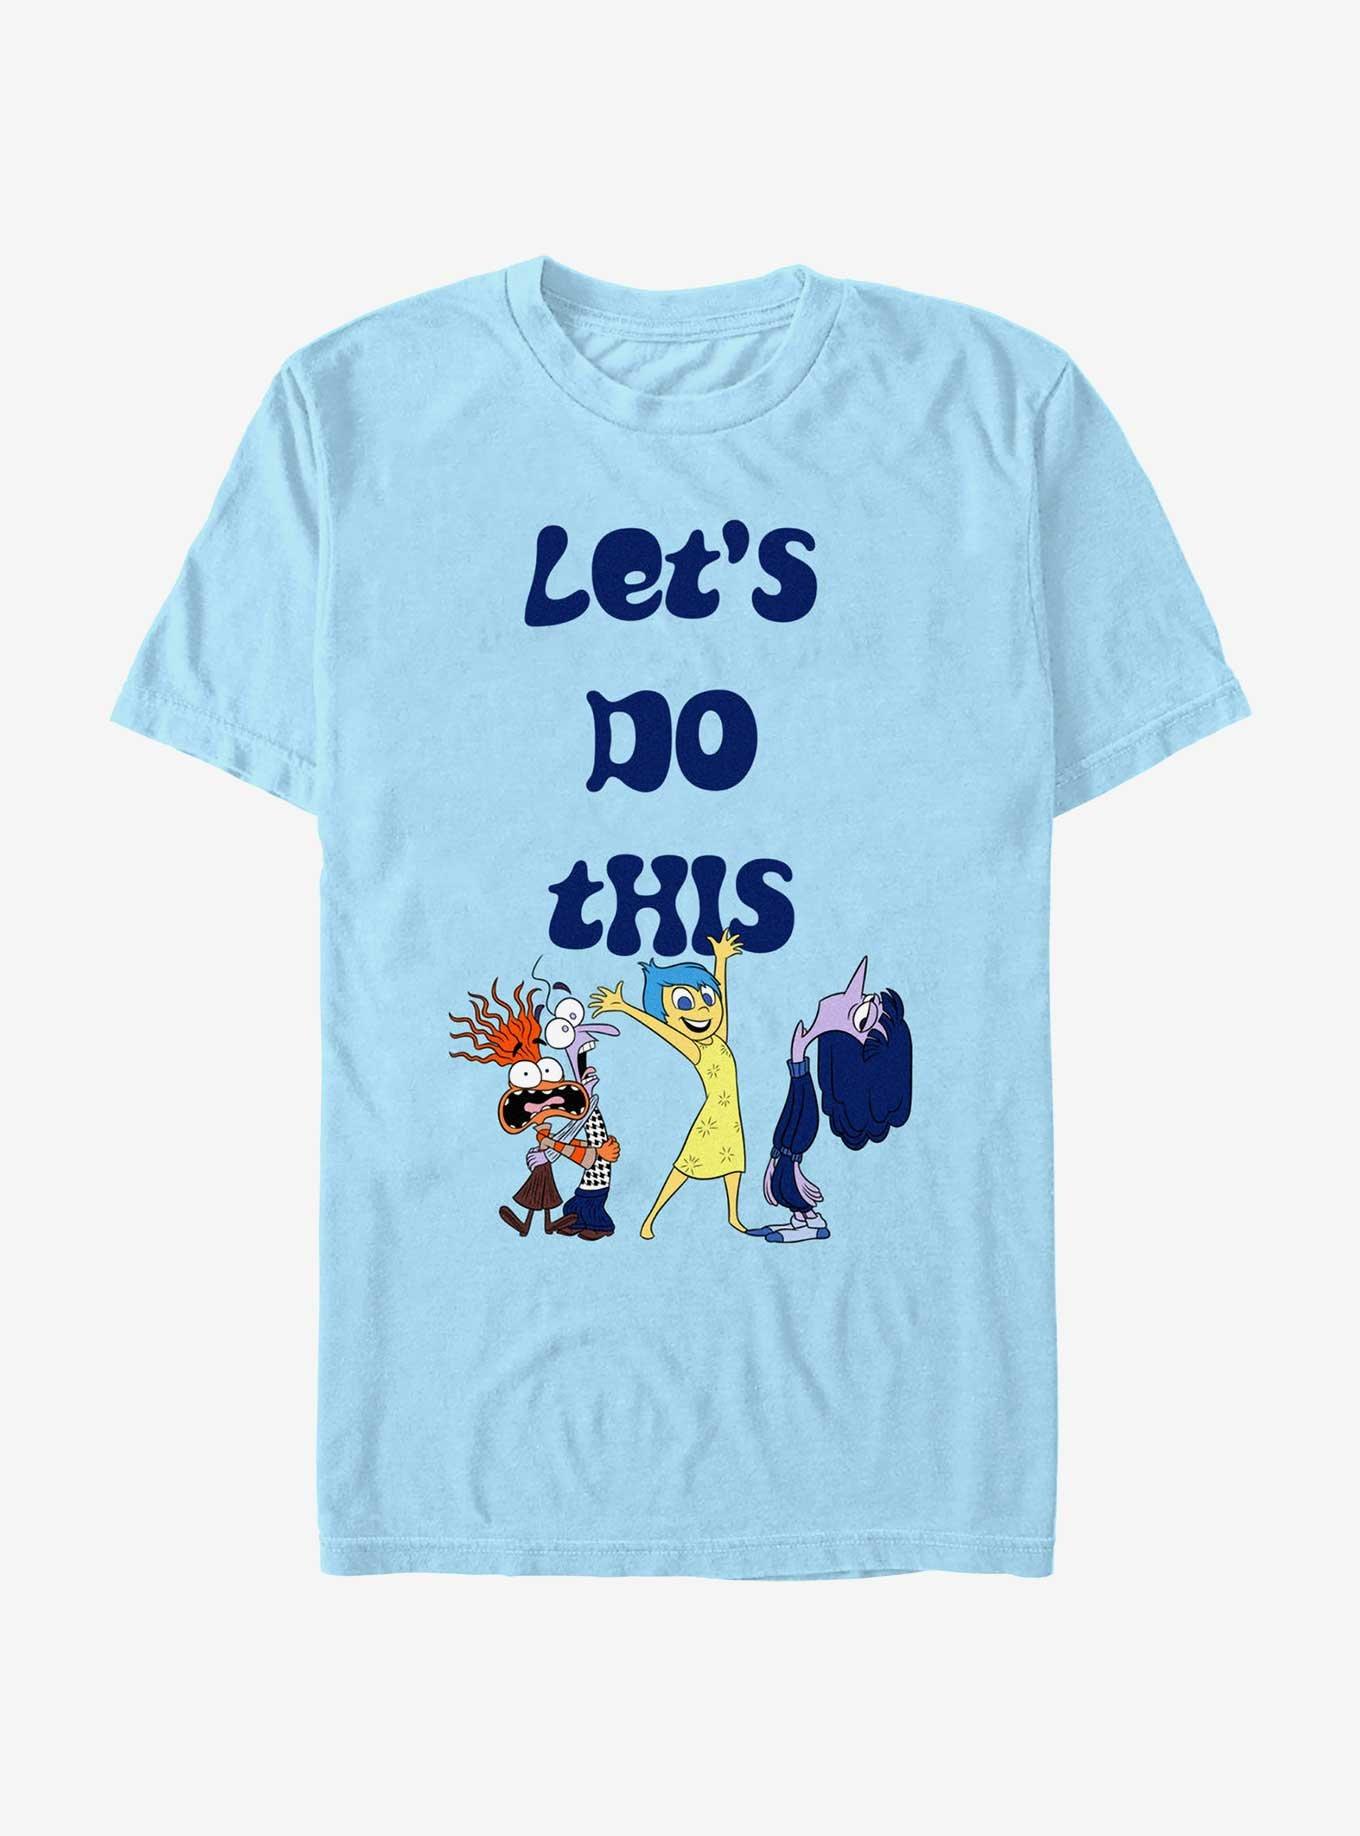 Disney Pixar Inside Out 2 Let's Do This T-Shirt, LT BLUE, hi-res